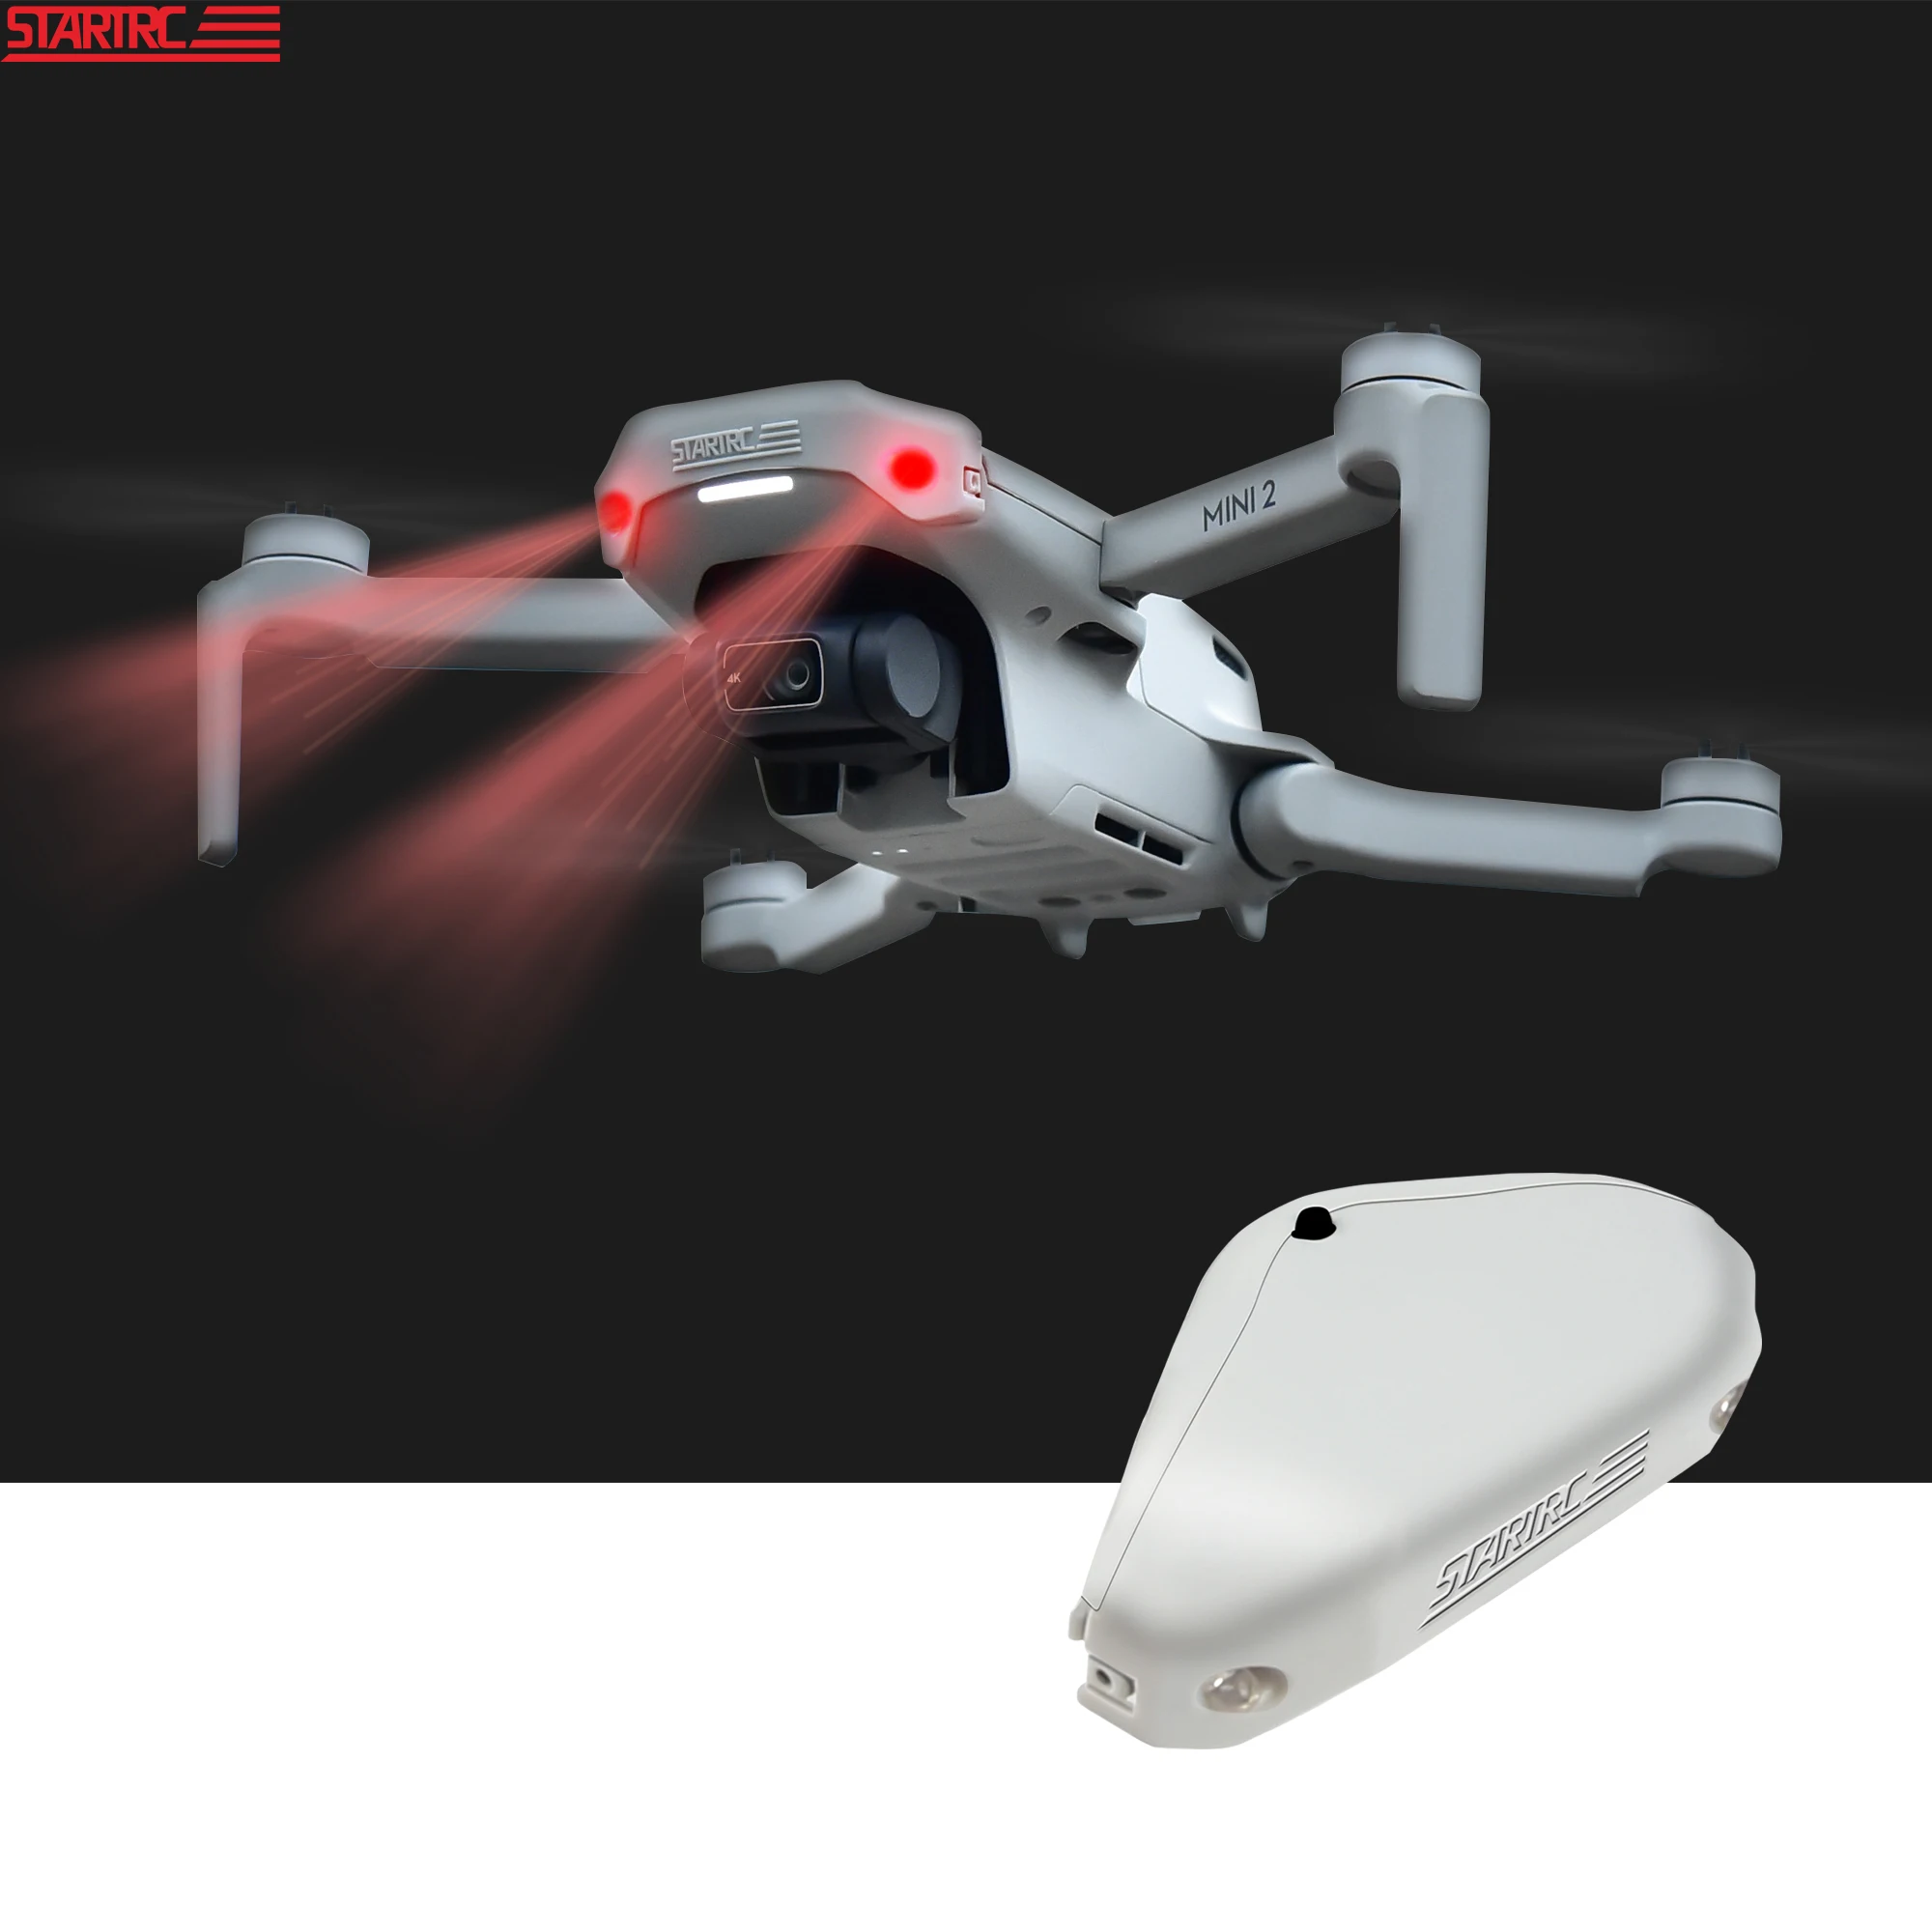 Infrarot-Induktions-Drohne Fliegender Blitz LED-Beleuchtung Ball Hubschraub D5I4 